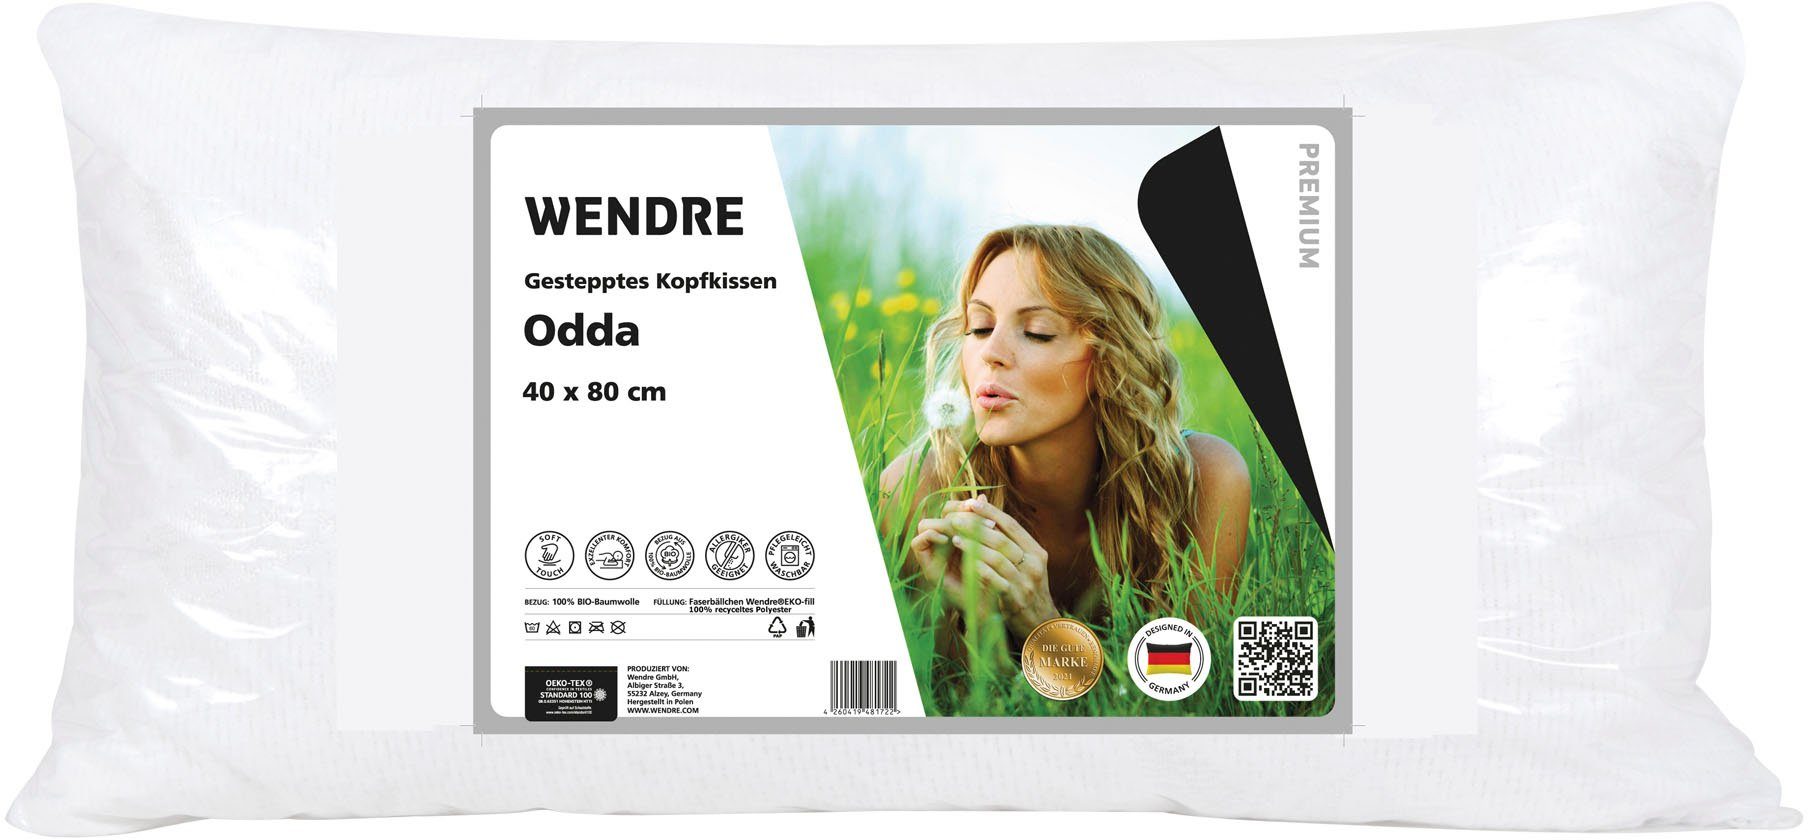 Baumwollkissen Odda, Bezug: Wendre, Baumwollkissen veganen oder aus in 100% Materialien, Baumwolle, 40x80 80x80 cm